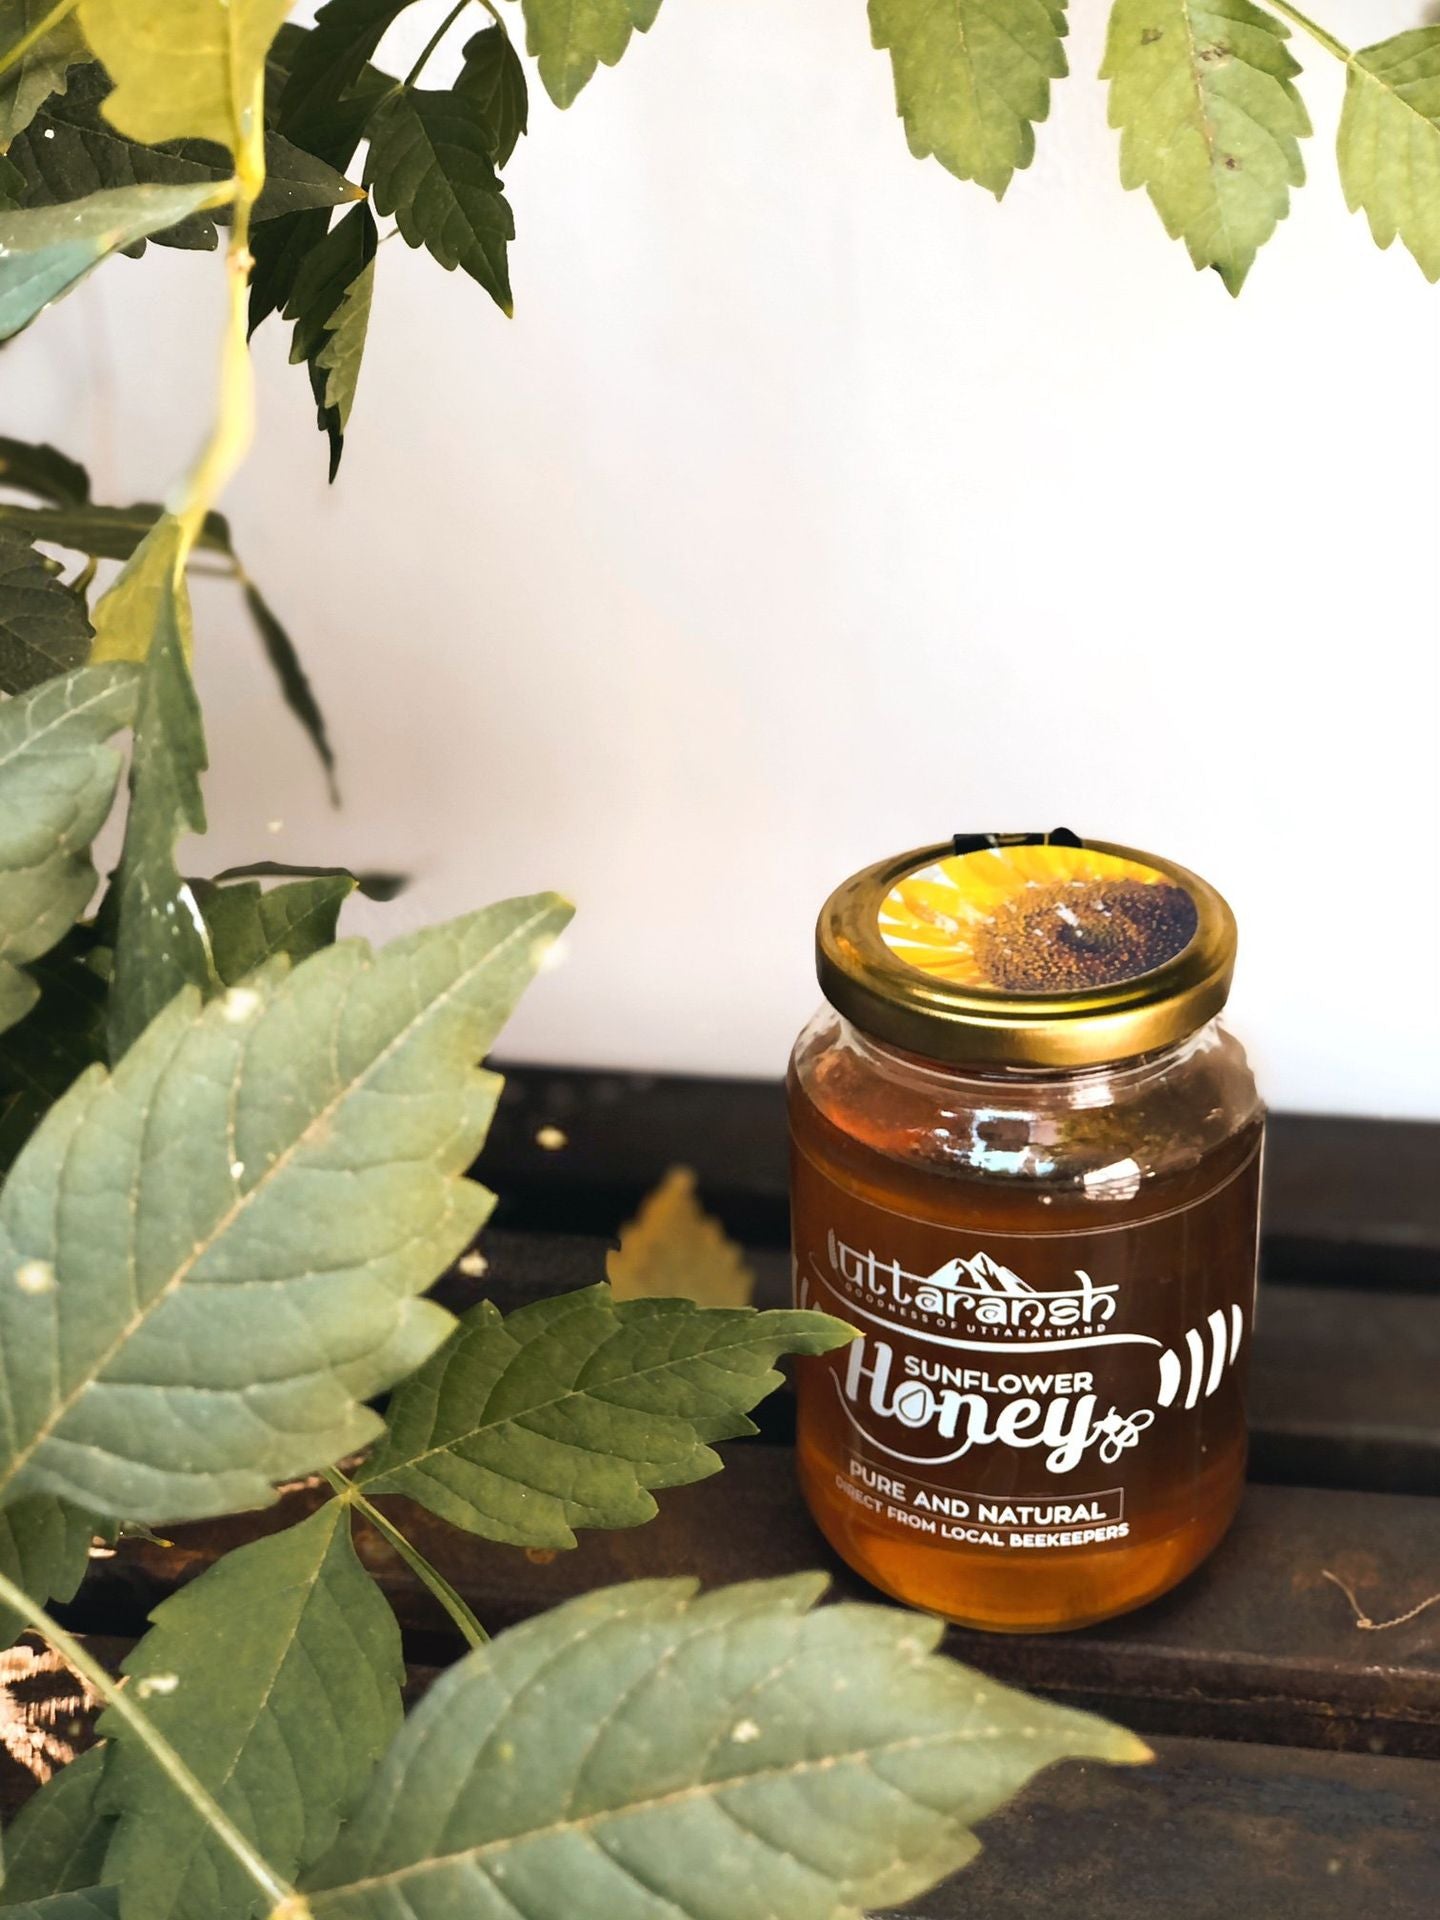 Uttaransh Sunflower Honey 500gms - hfnl!fe